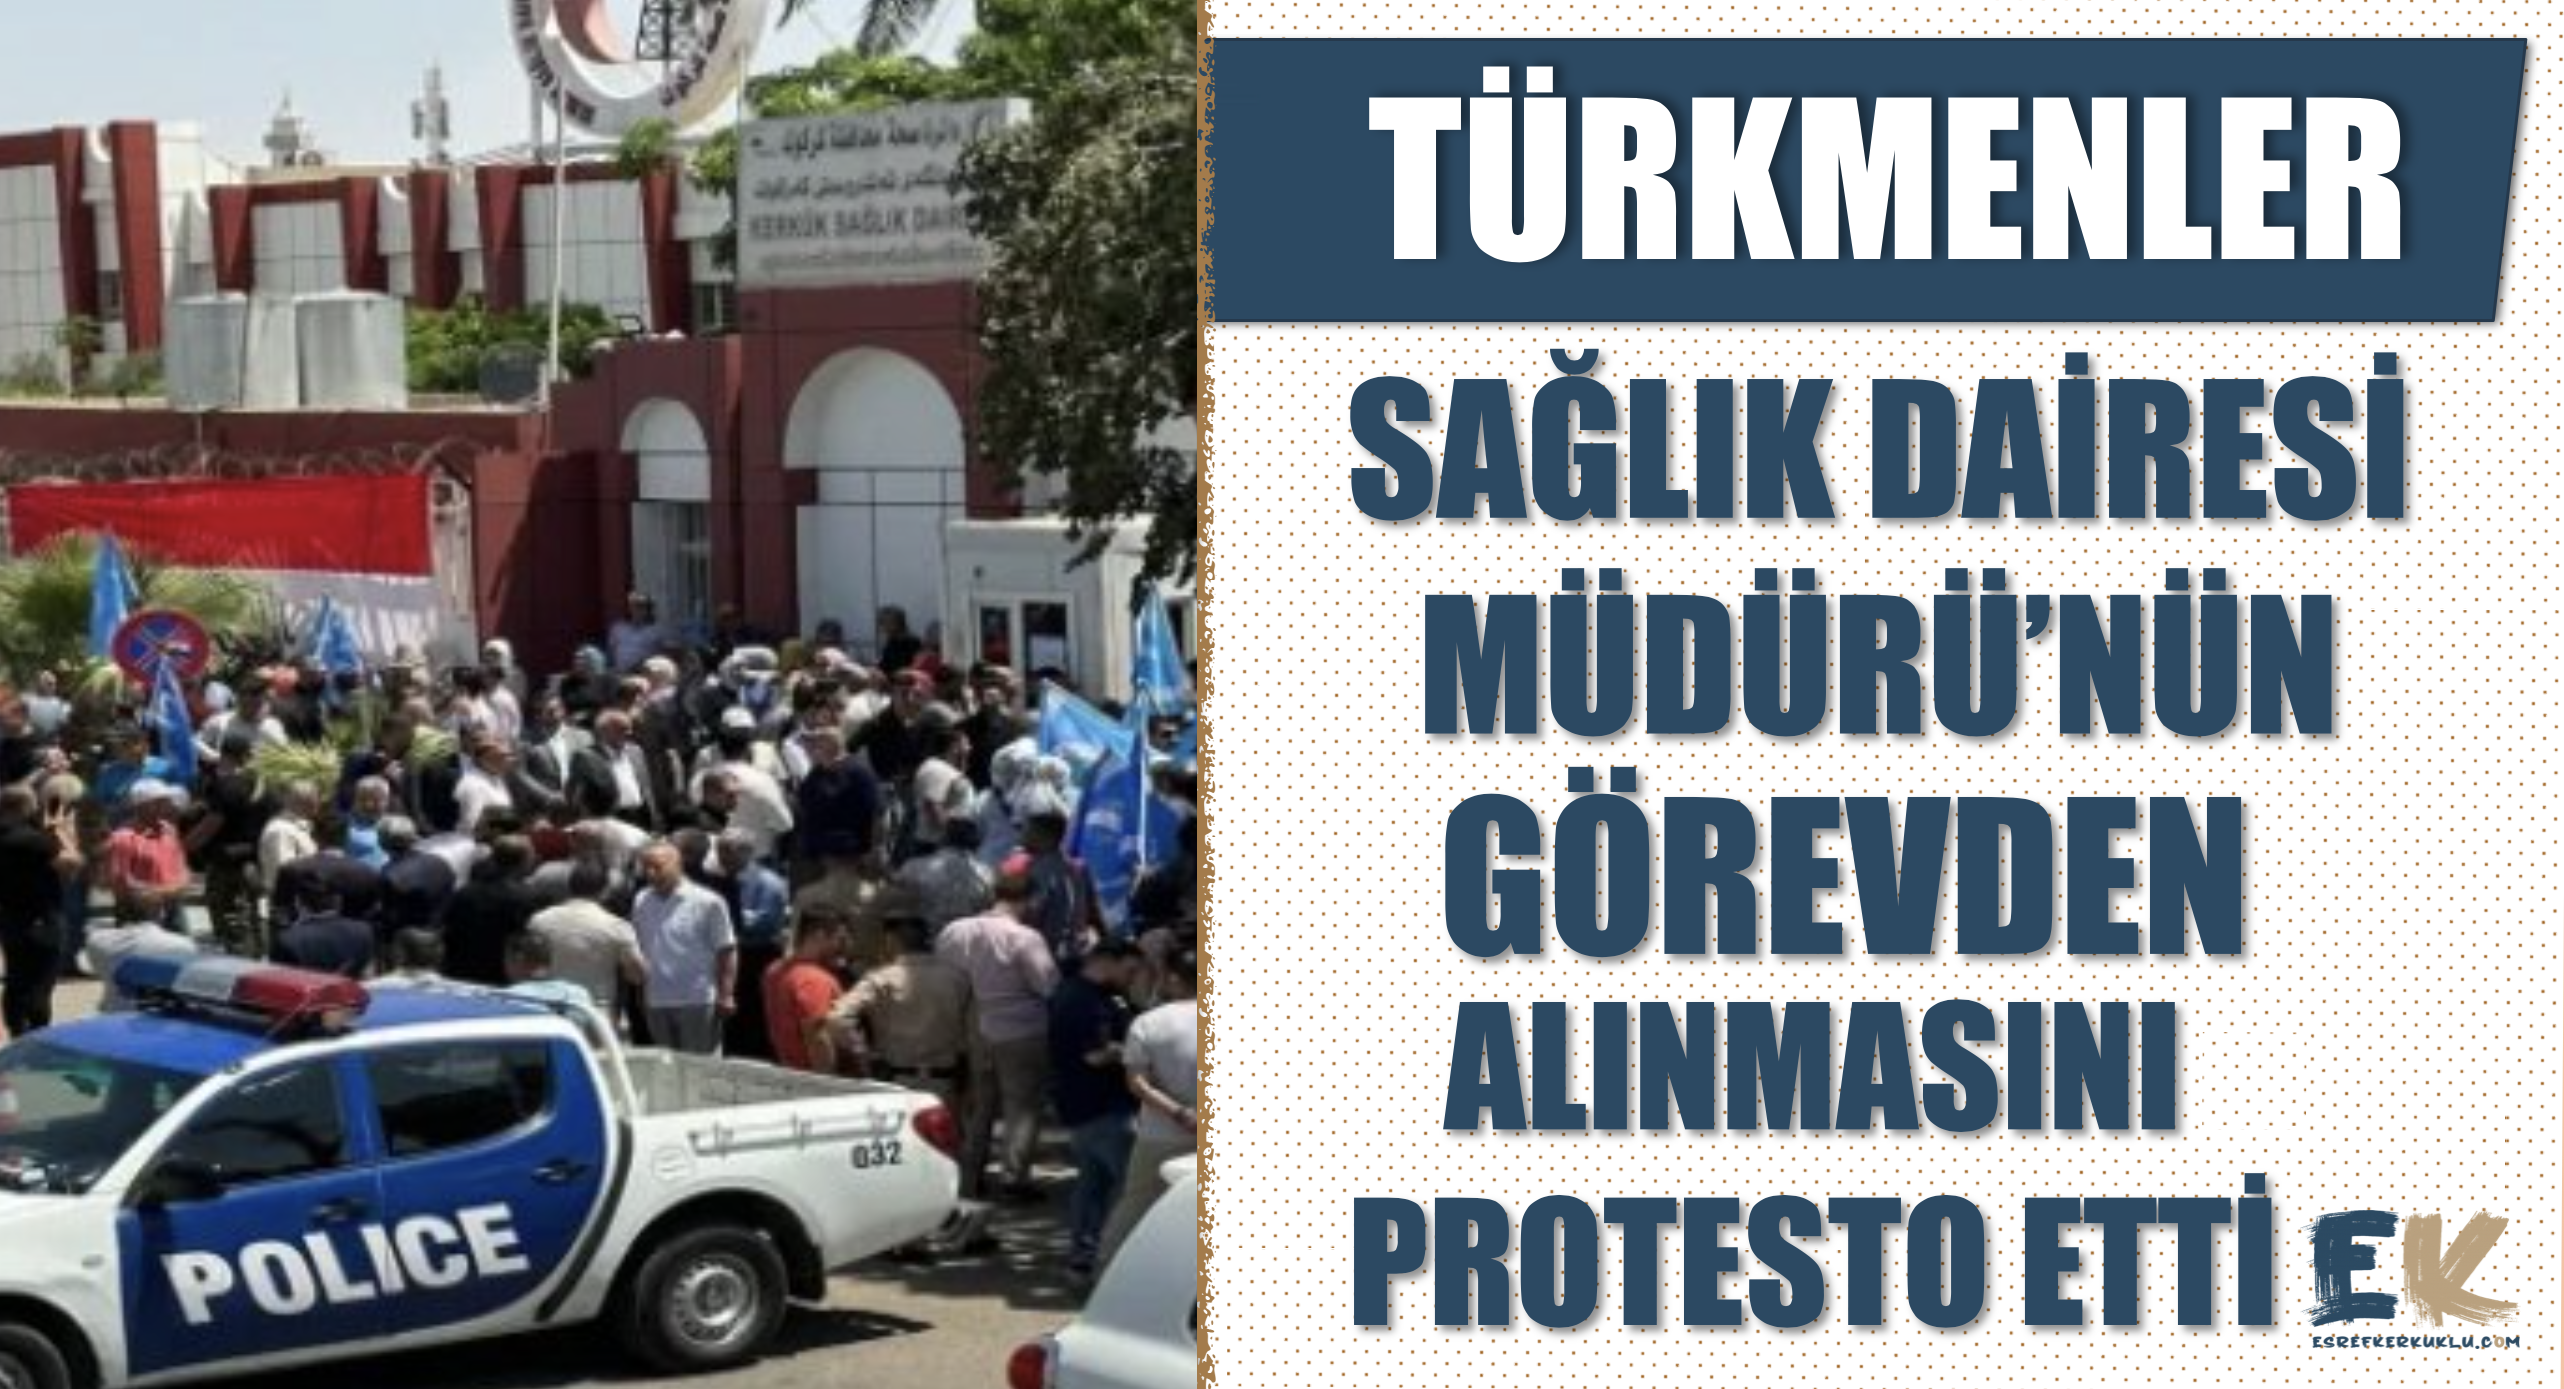 Türkmenler, Sağlık Dairesi Müdürü'nün görevden alınmasını protesto etti